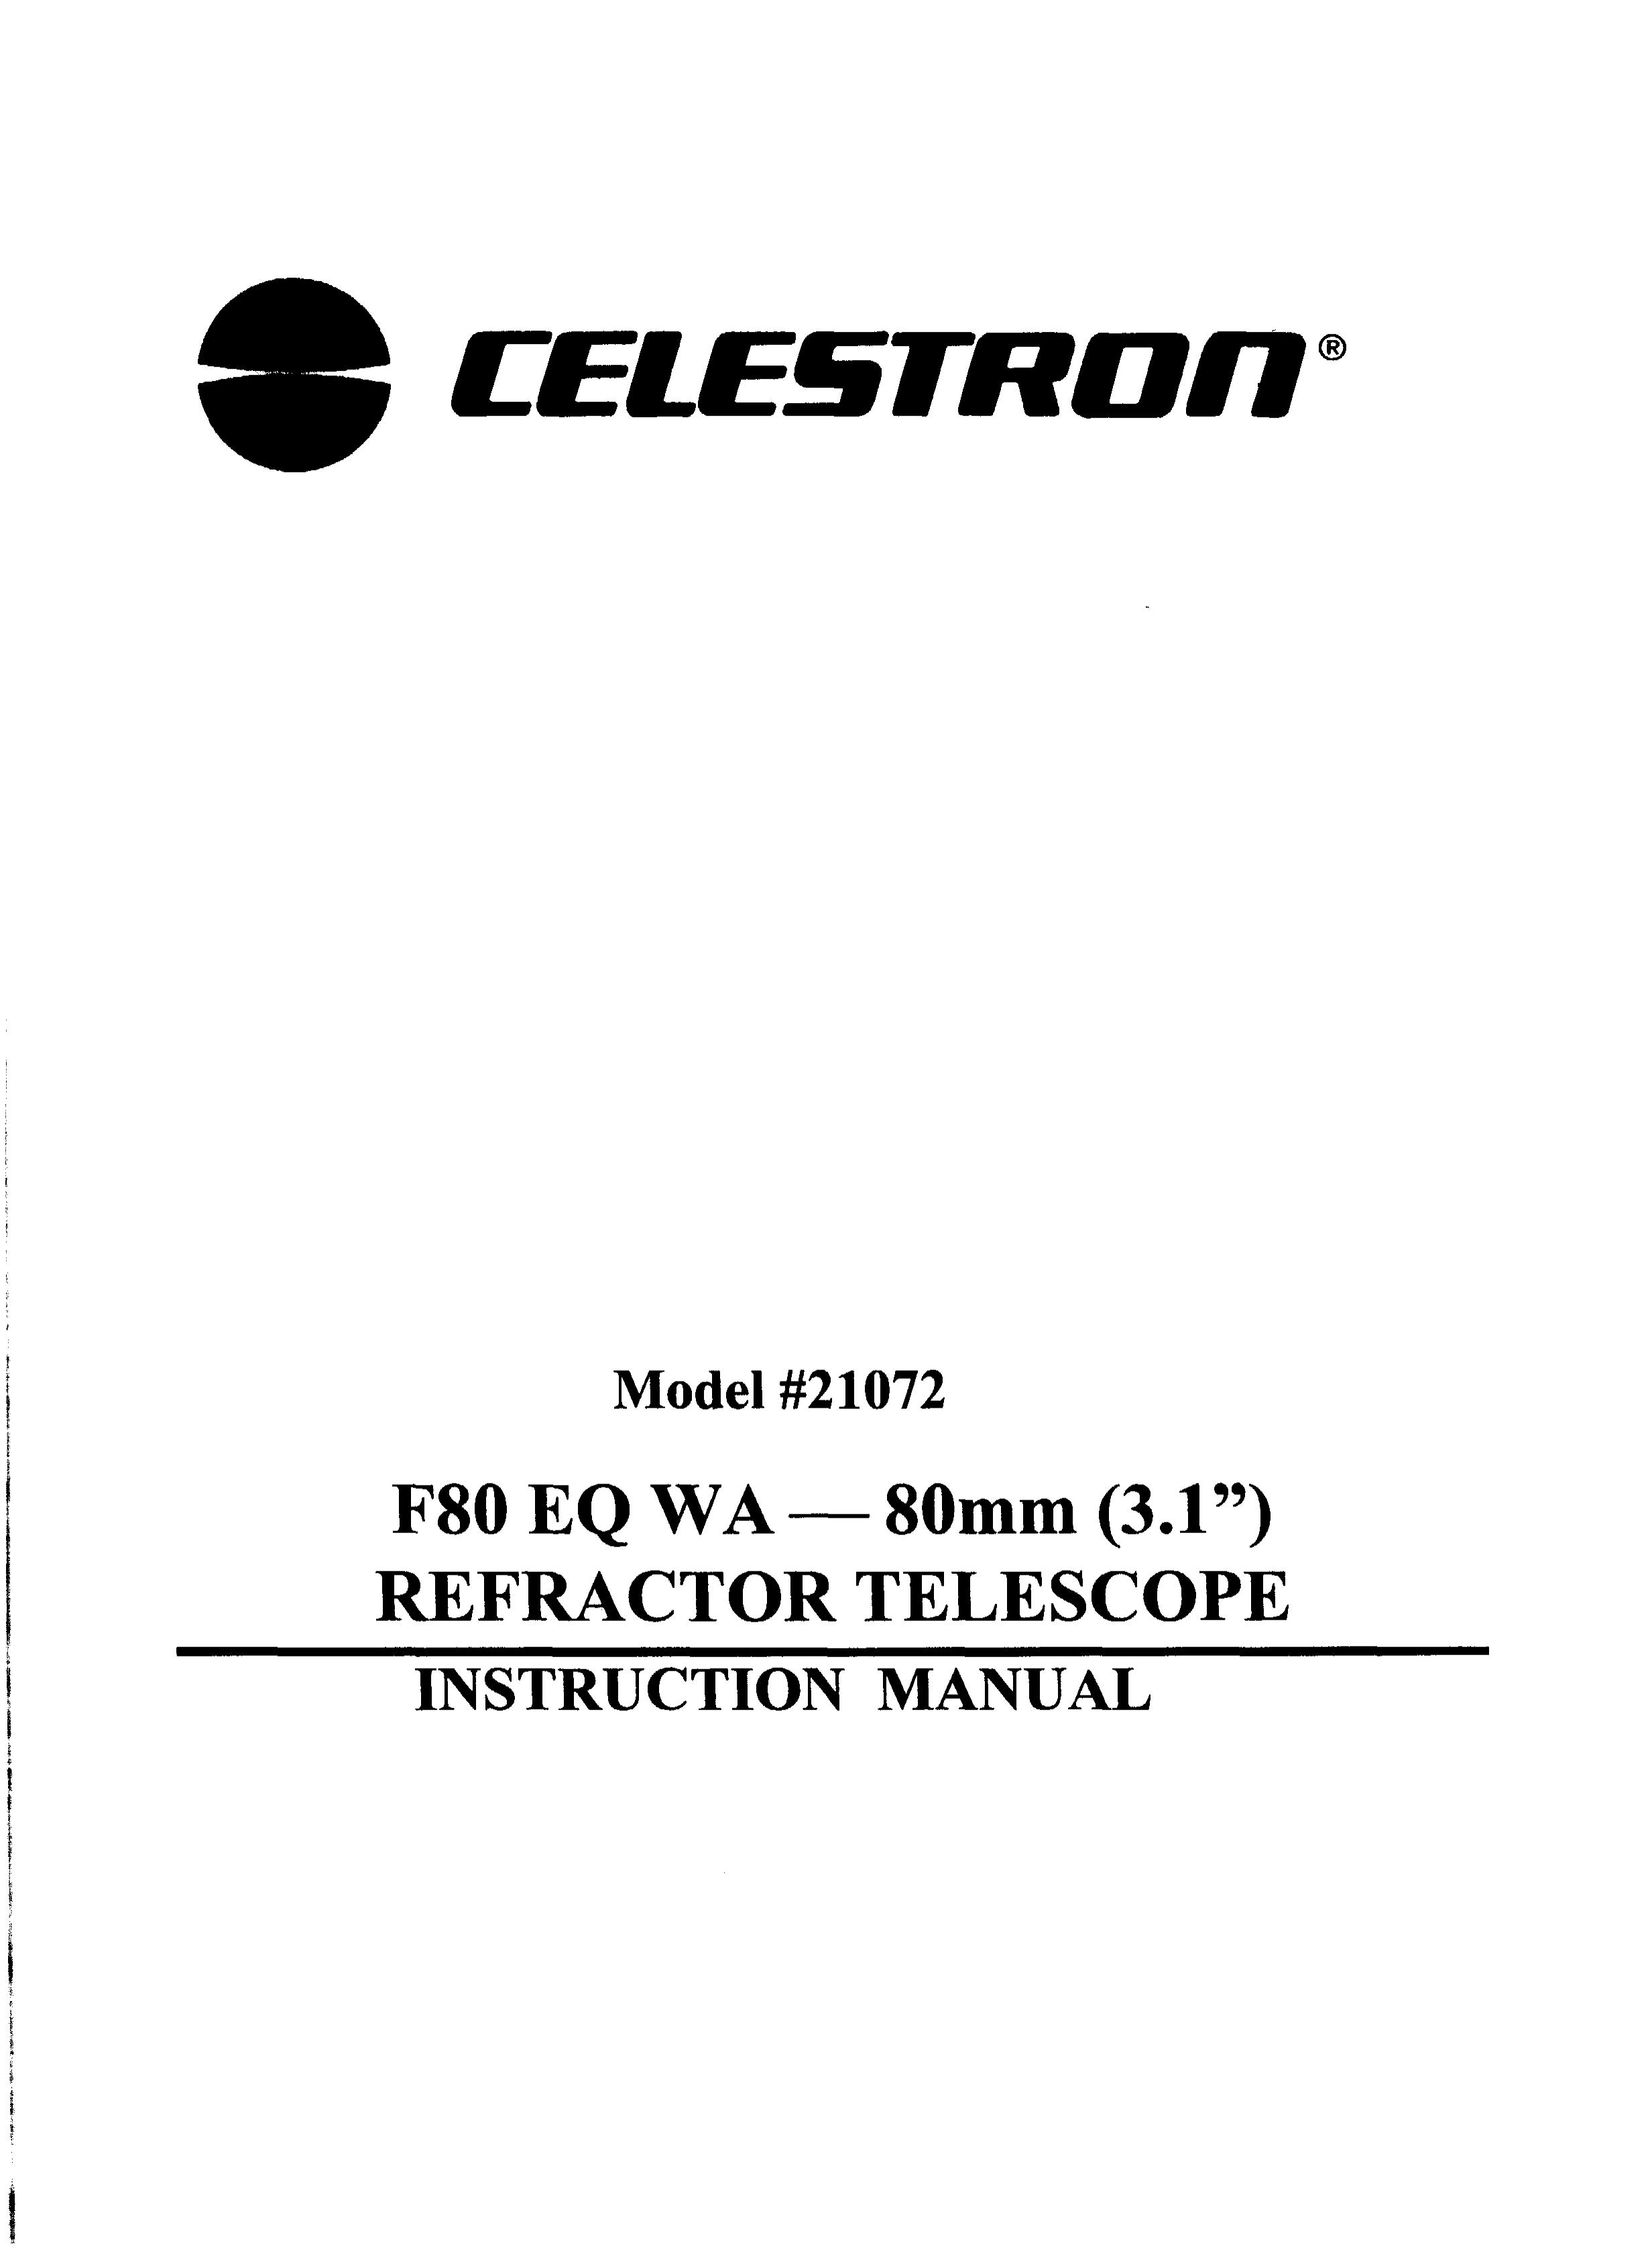 Celestron 21072 Telescope User Manual